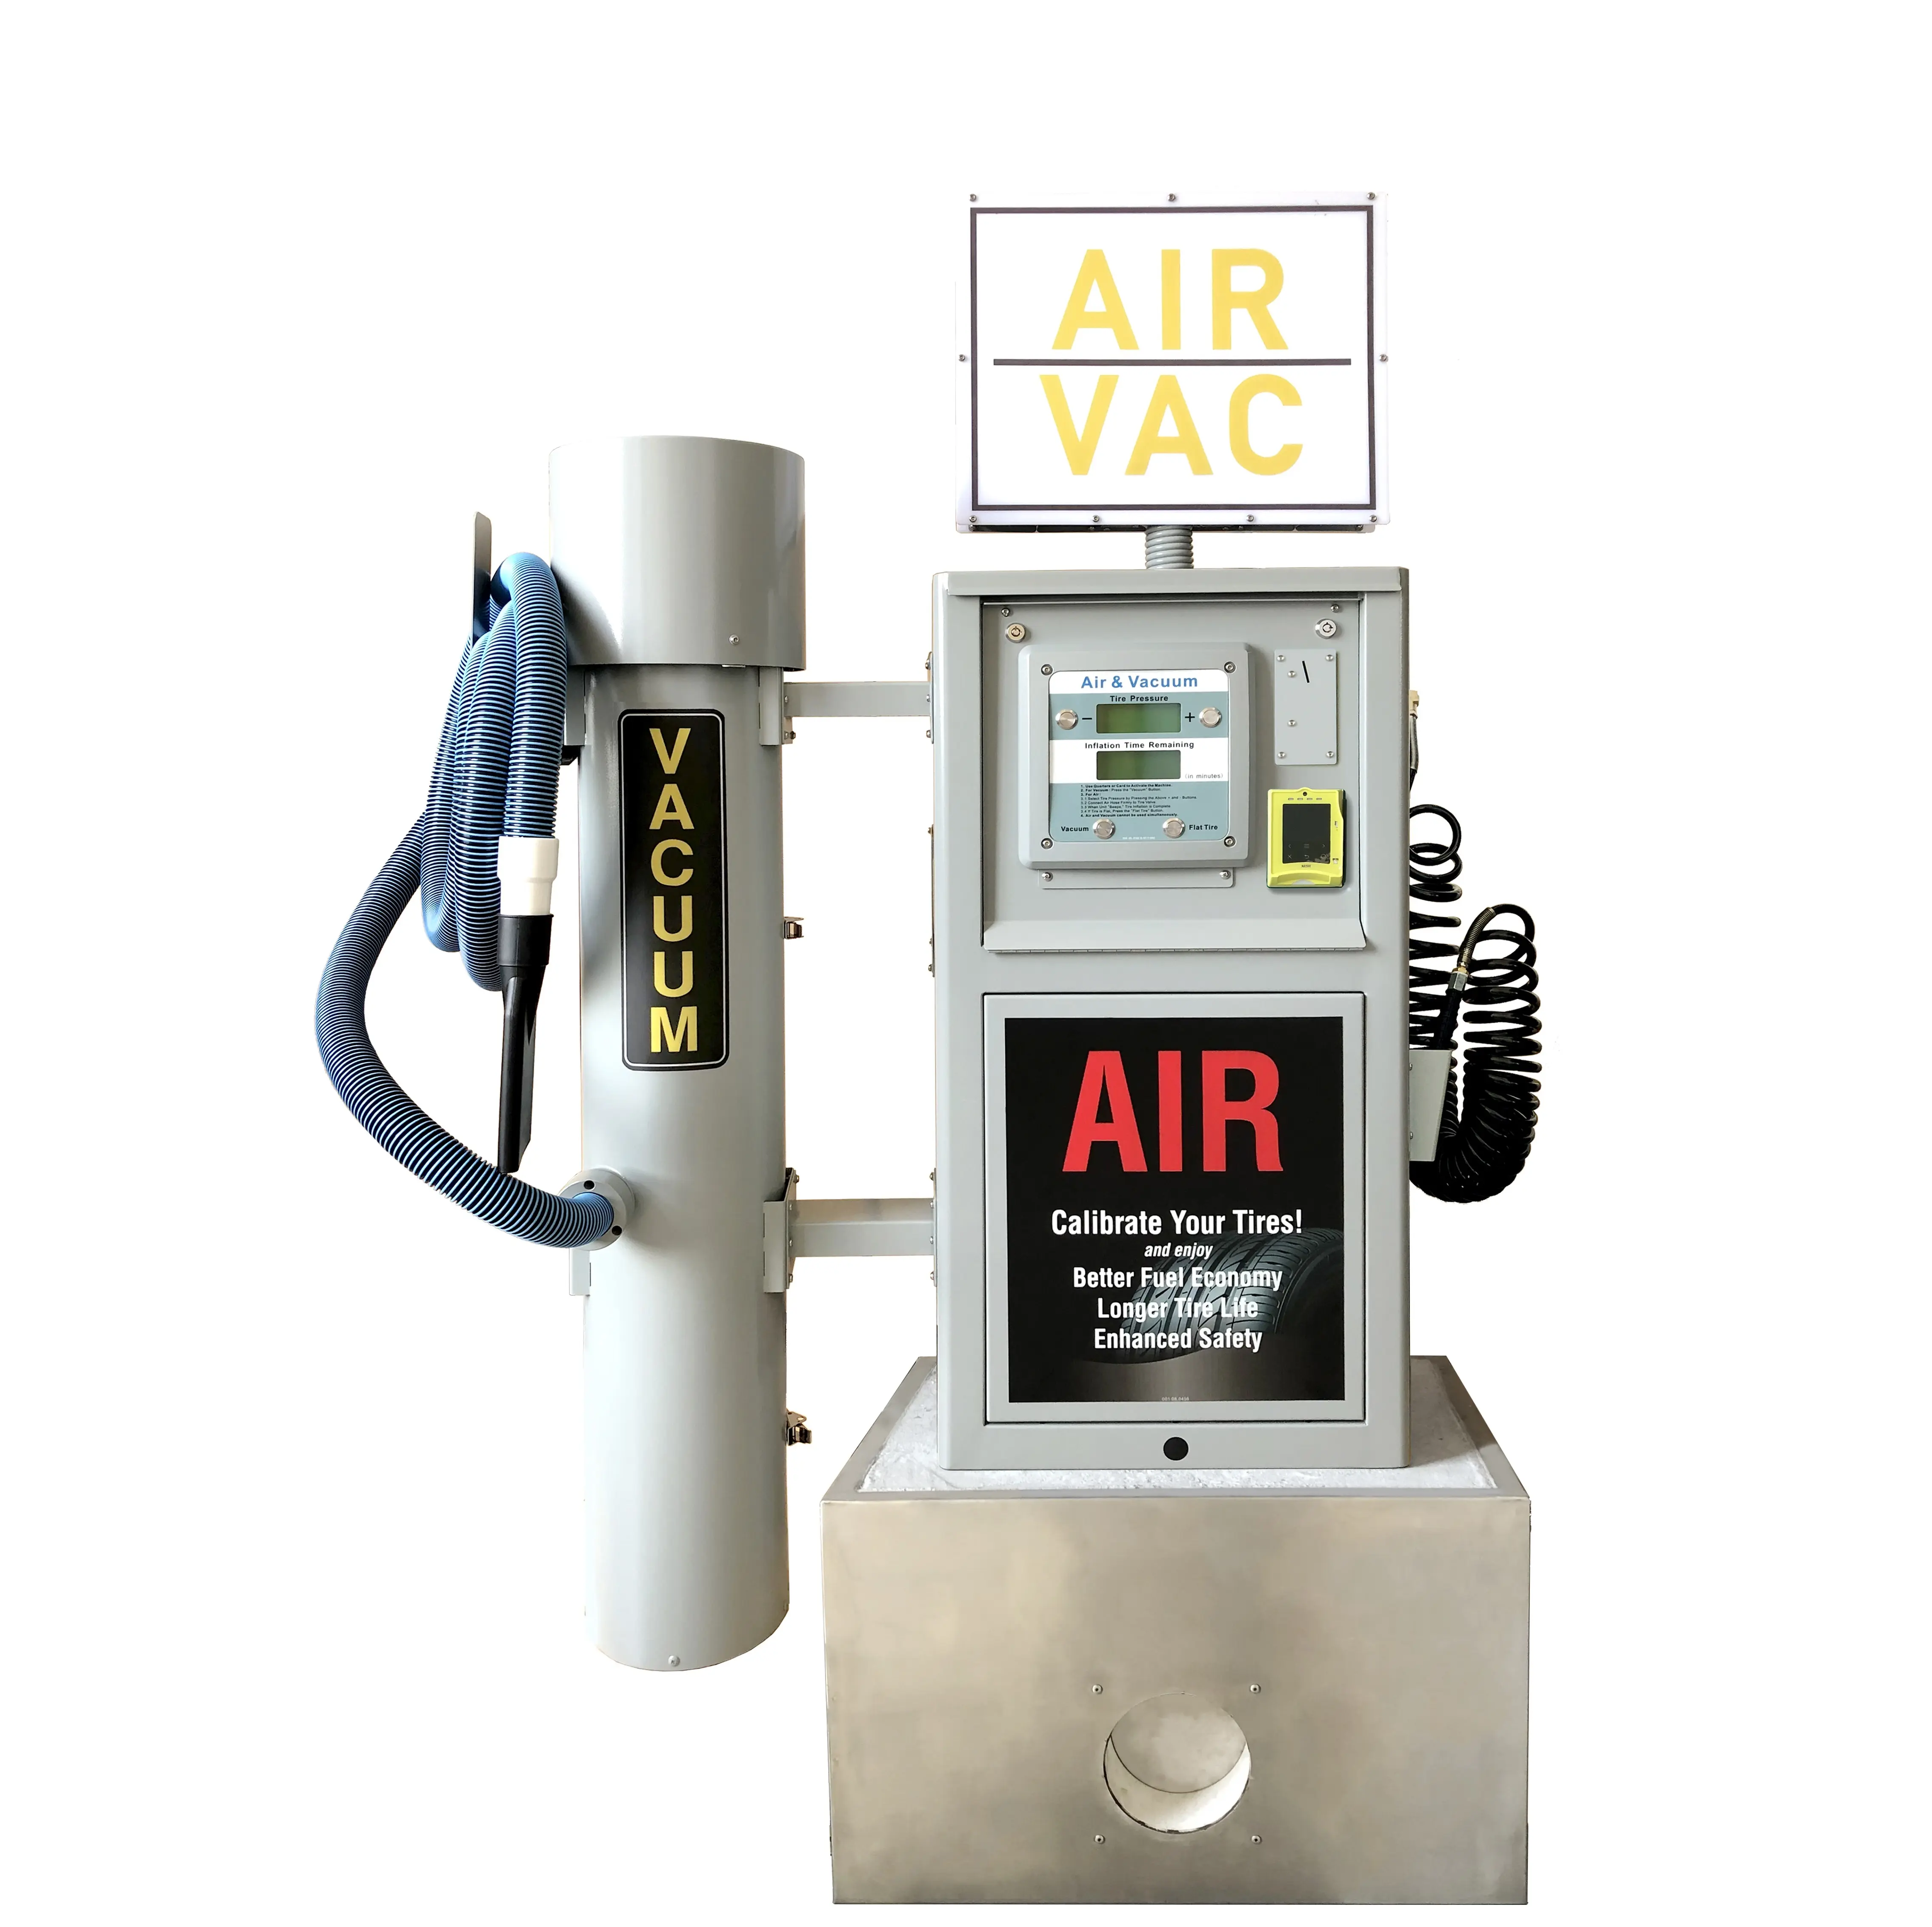 שואב אבק עבור מכונת דלק אוויר מכונת דלק משומש משאבות מדחסים צמיגי מד מטבע מופעל מתנפחים צמיגים דיגיטליים